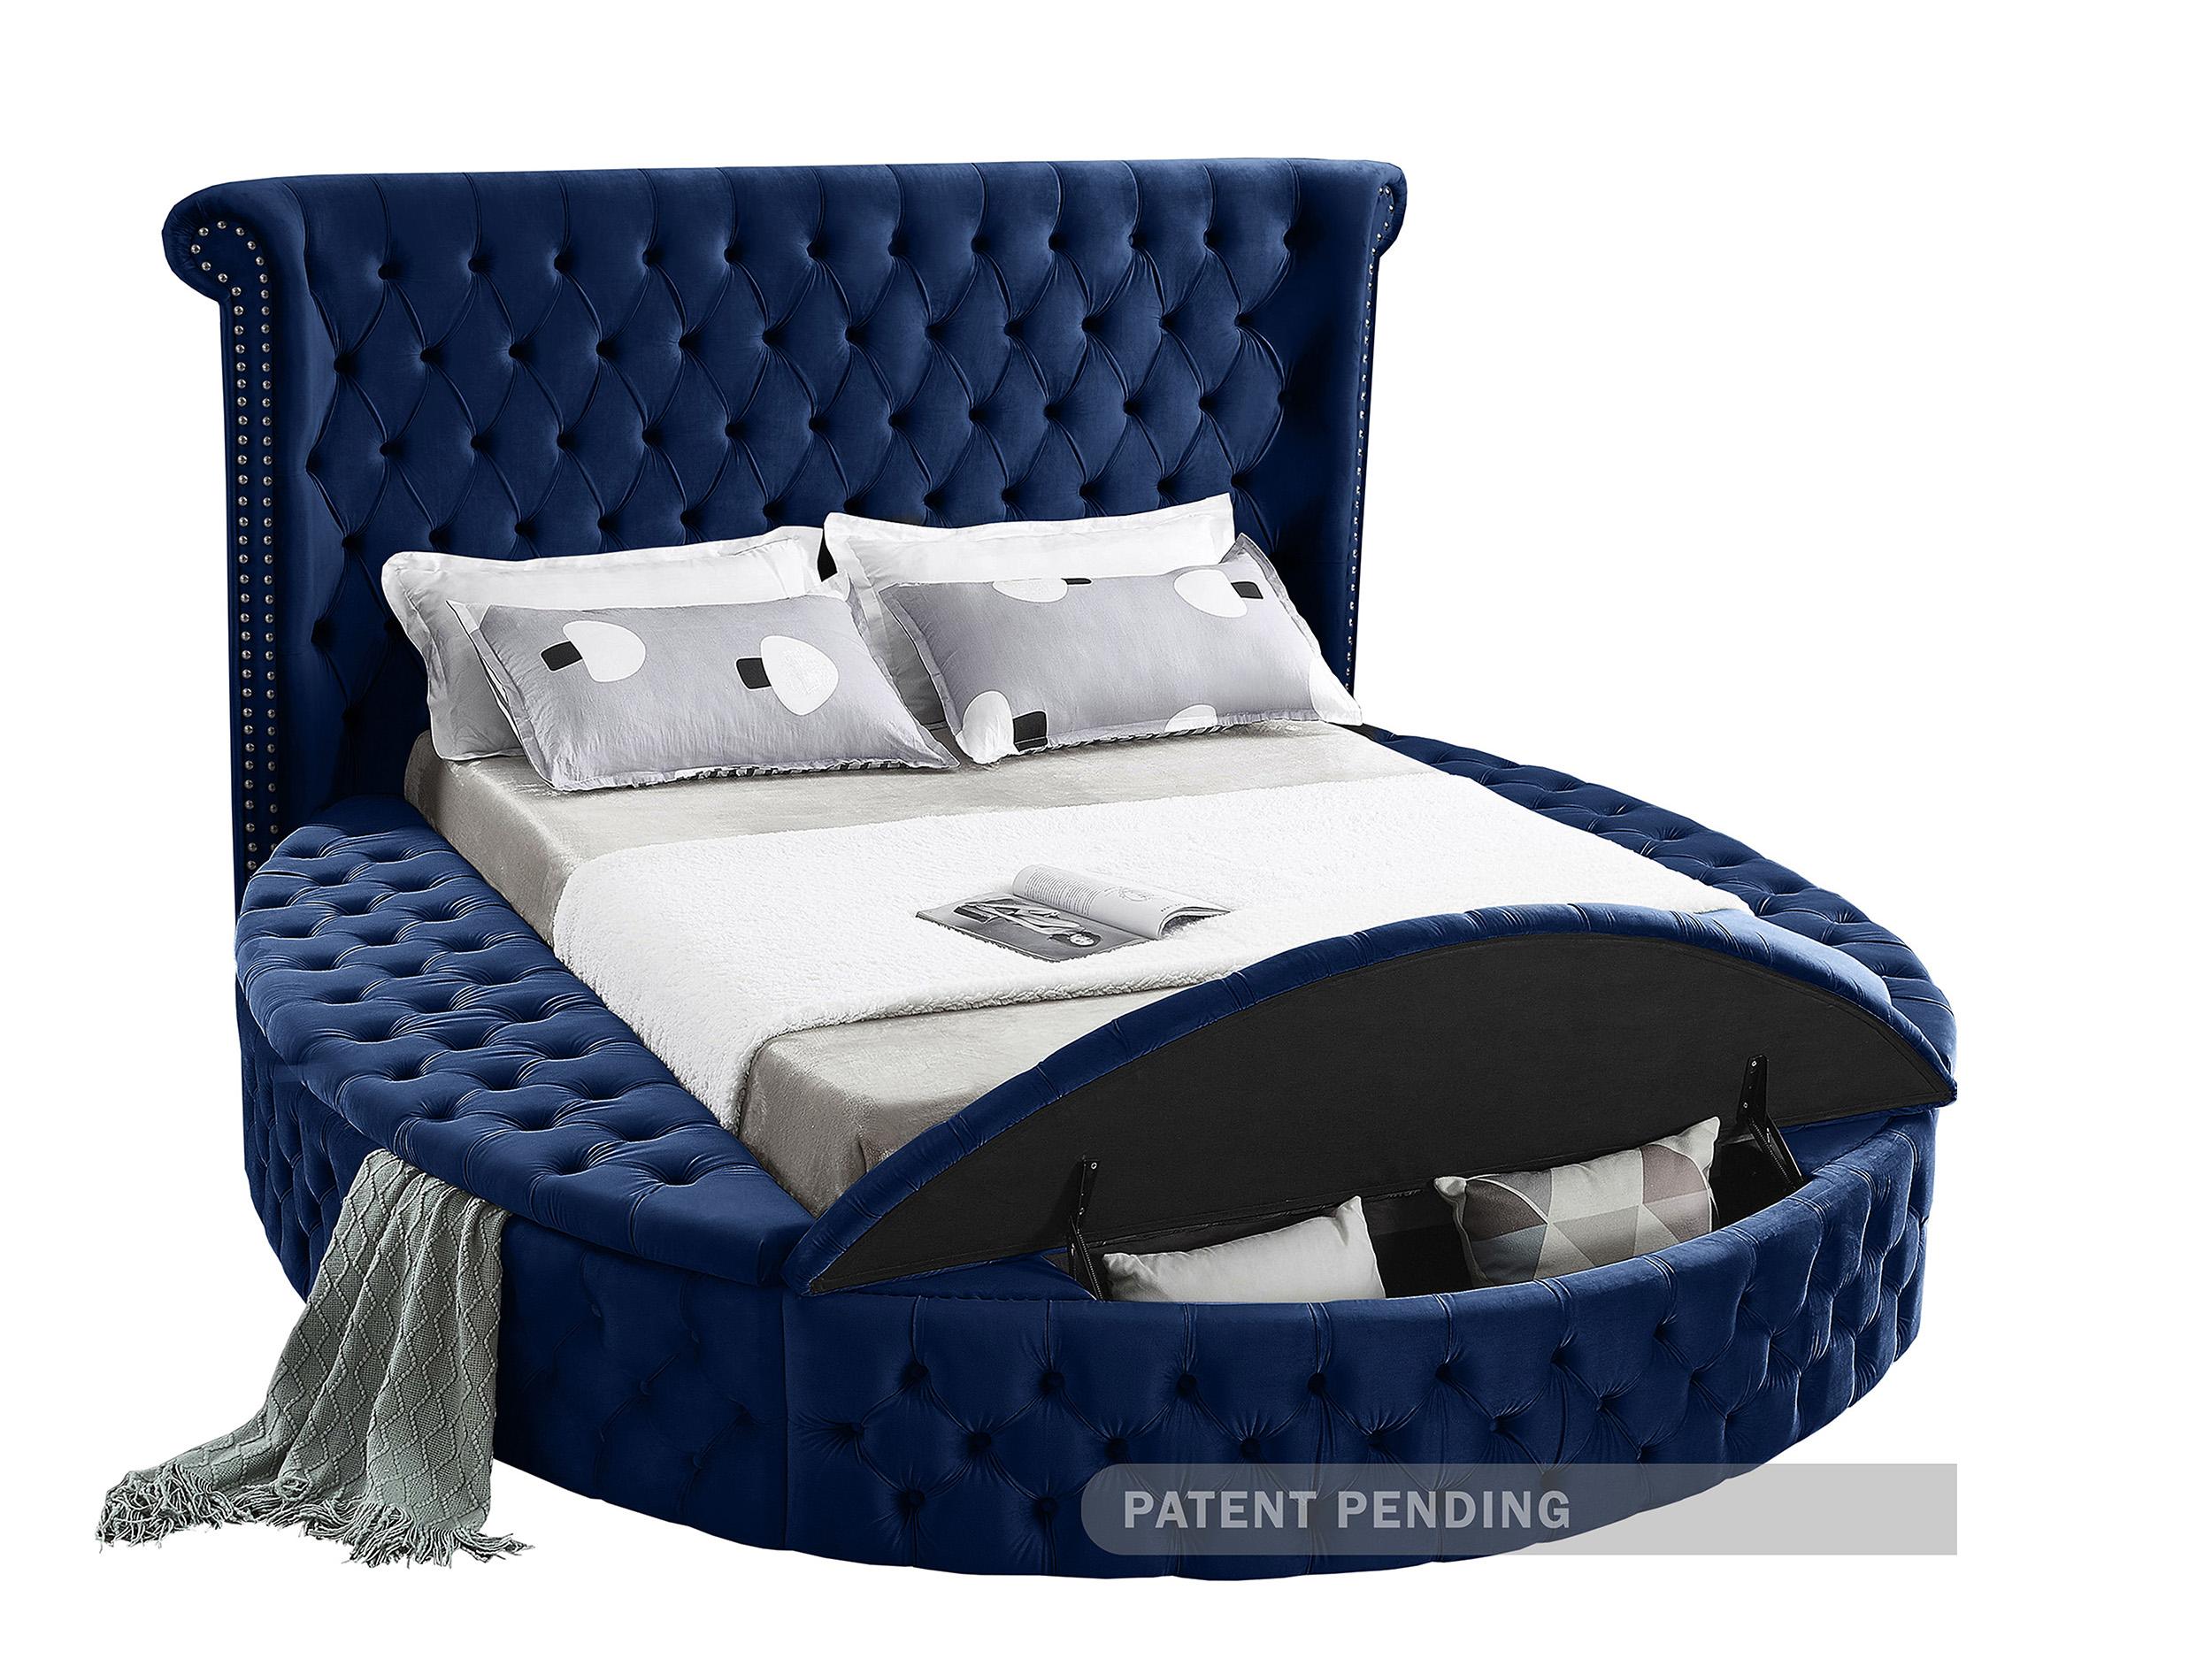 

    
Meridian Furniture LuxusNavy-F Storage Bed Navy LuxusNavy-F
